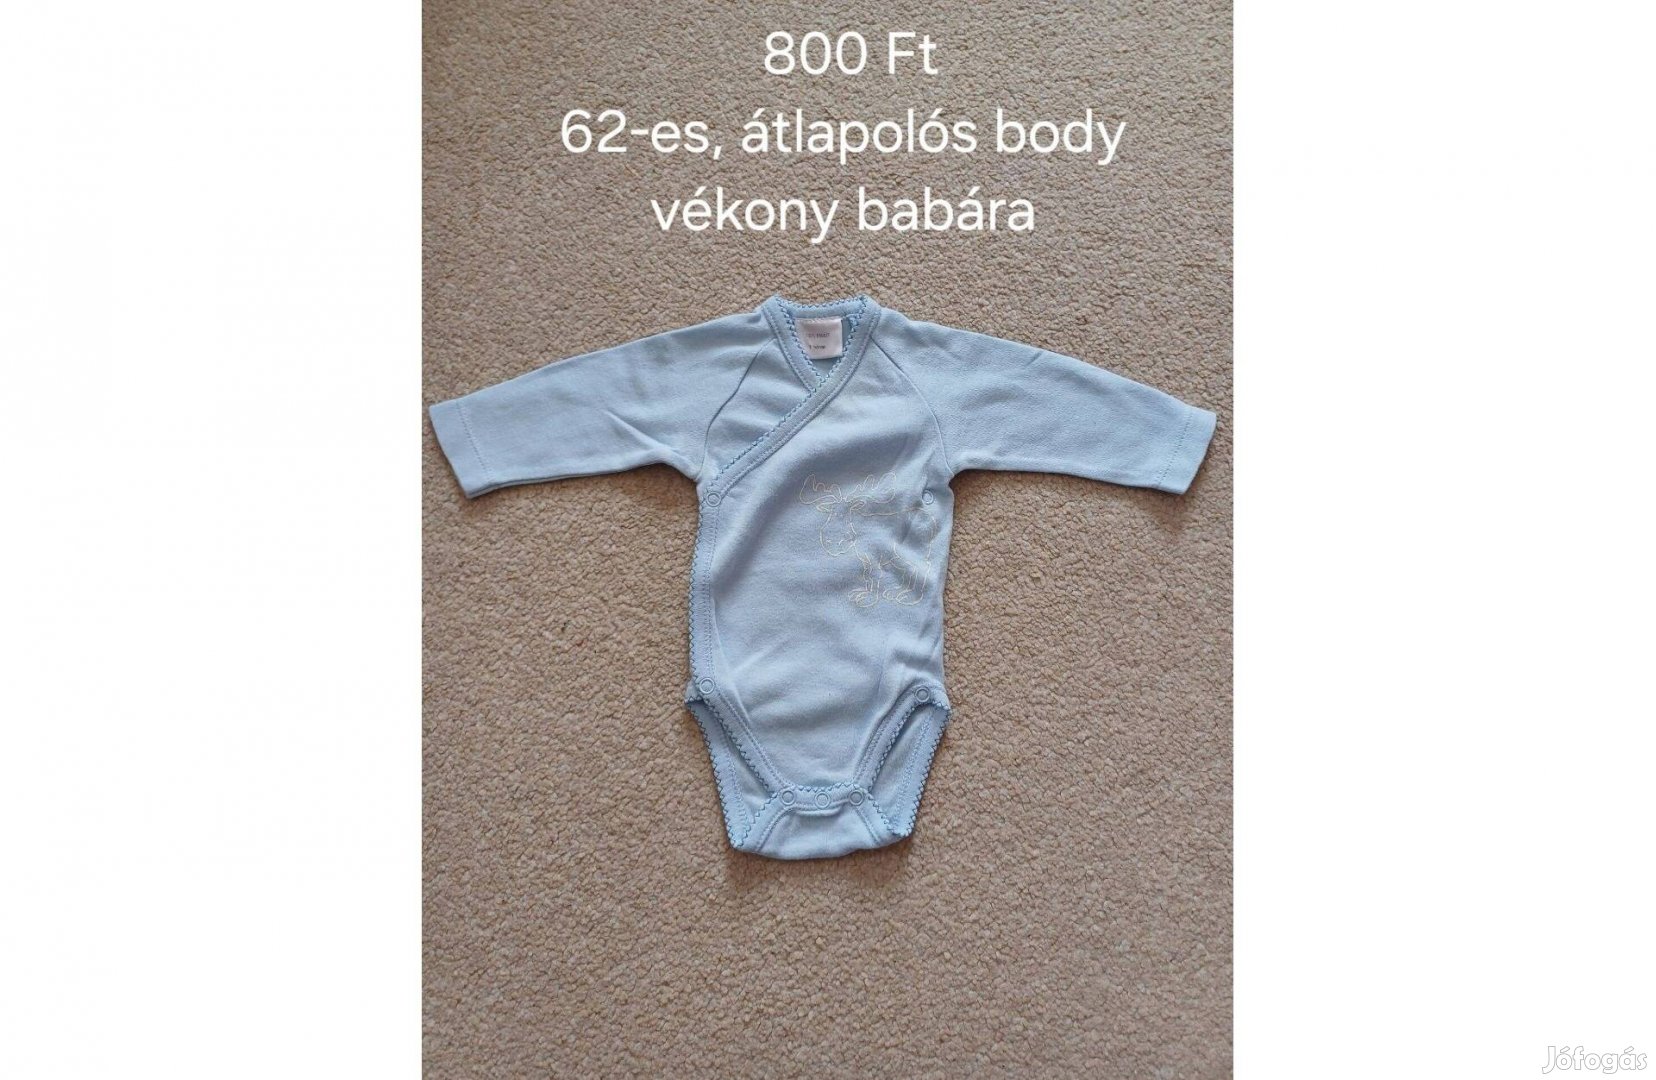 Átlapolós unisex body 62-es, BP. XVI